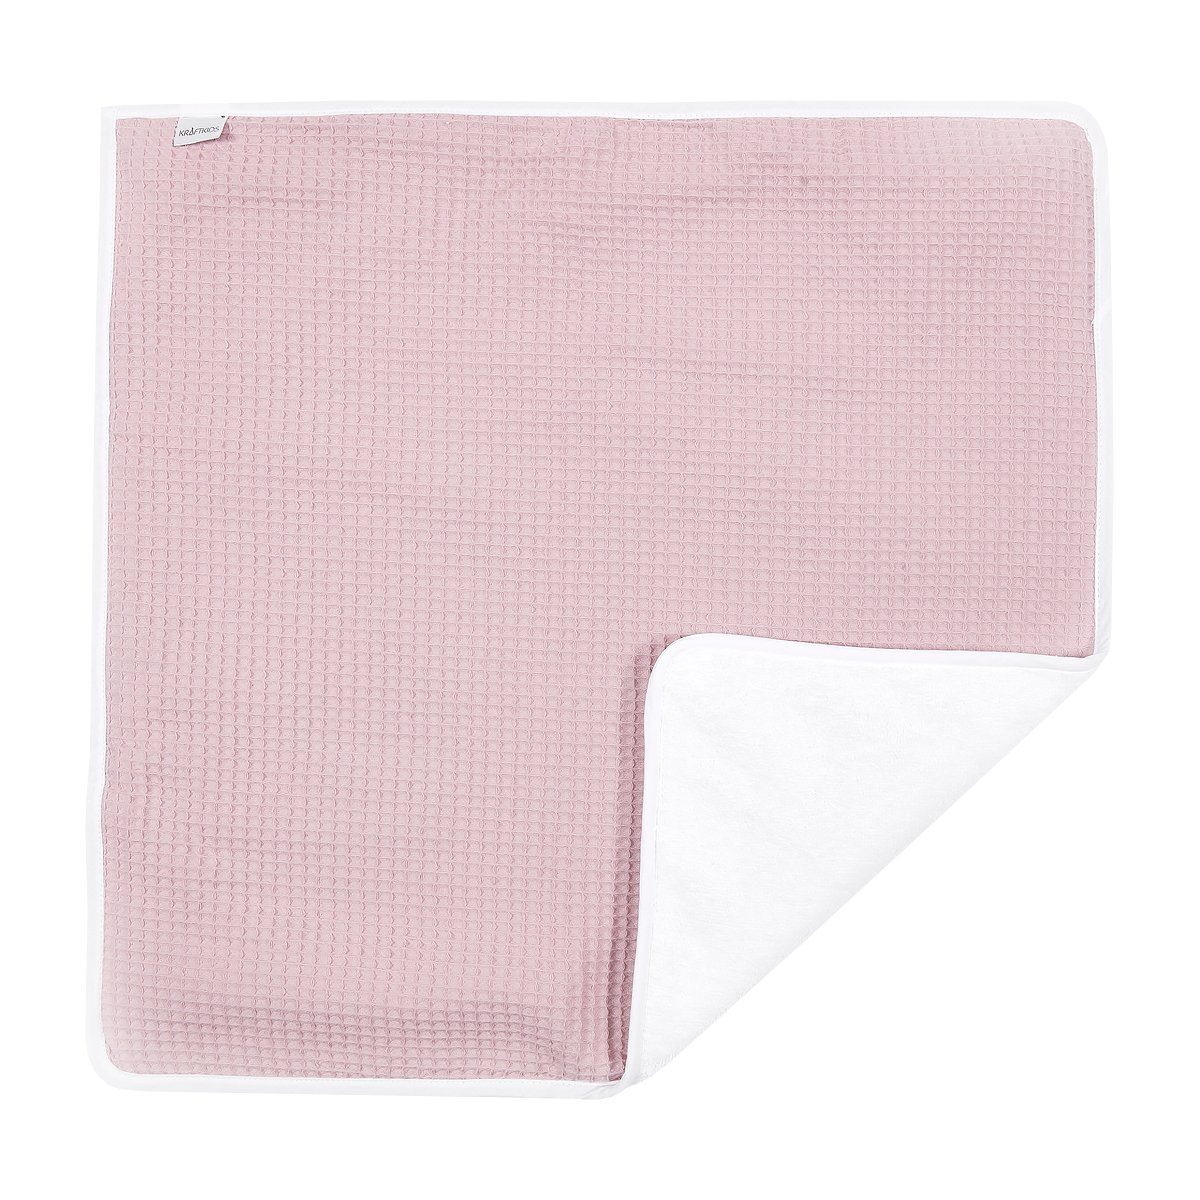 rosa, Innen Wickelunterlage 100% Unterwegs Wickelauflage Waffel KraftKids für Baumwolle, Piqué 3 Stoffsichten aus auch faltbar wasserundurchlässig,